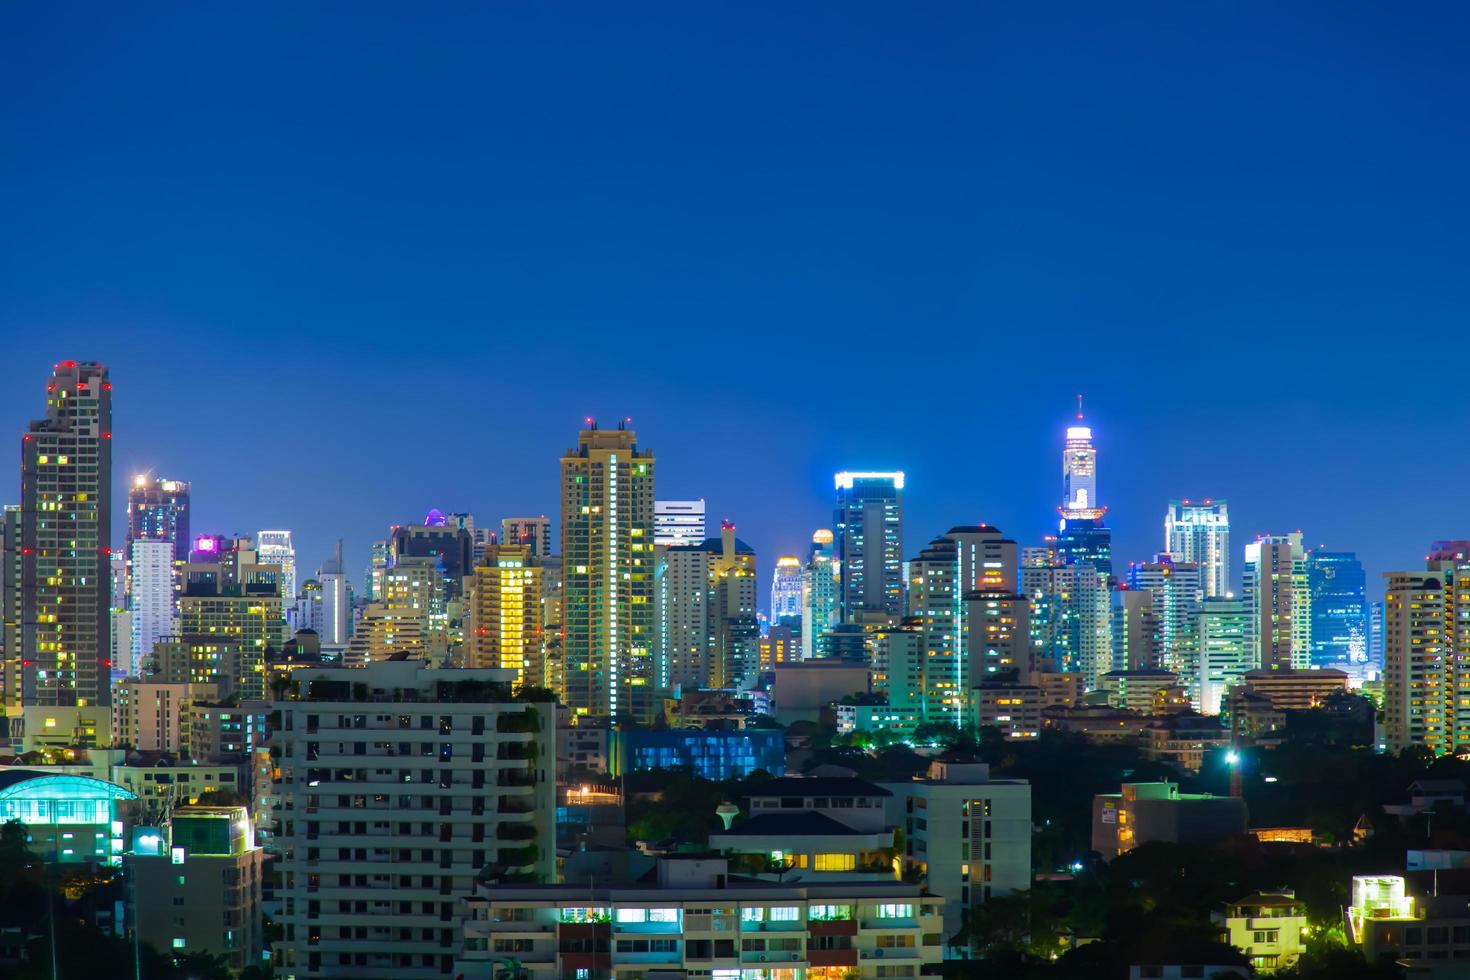 bangkok stad 's nachts foto